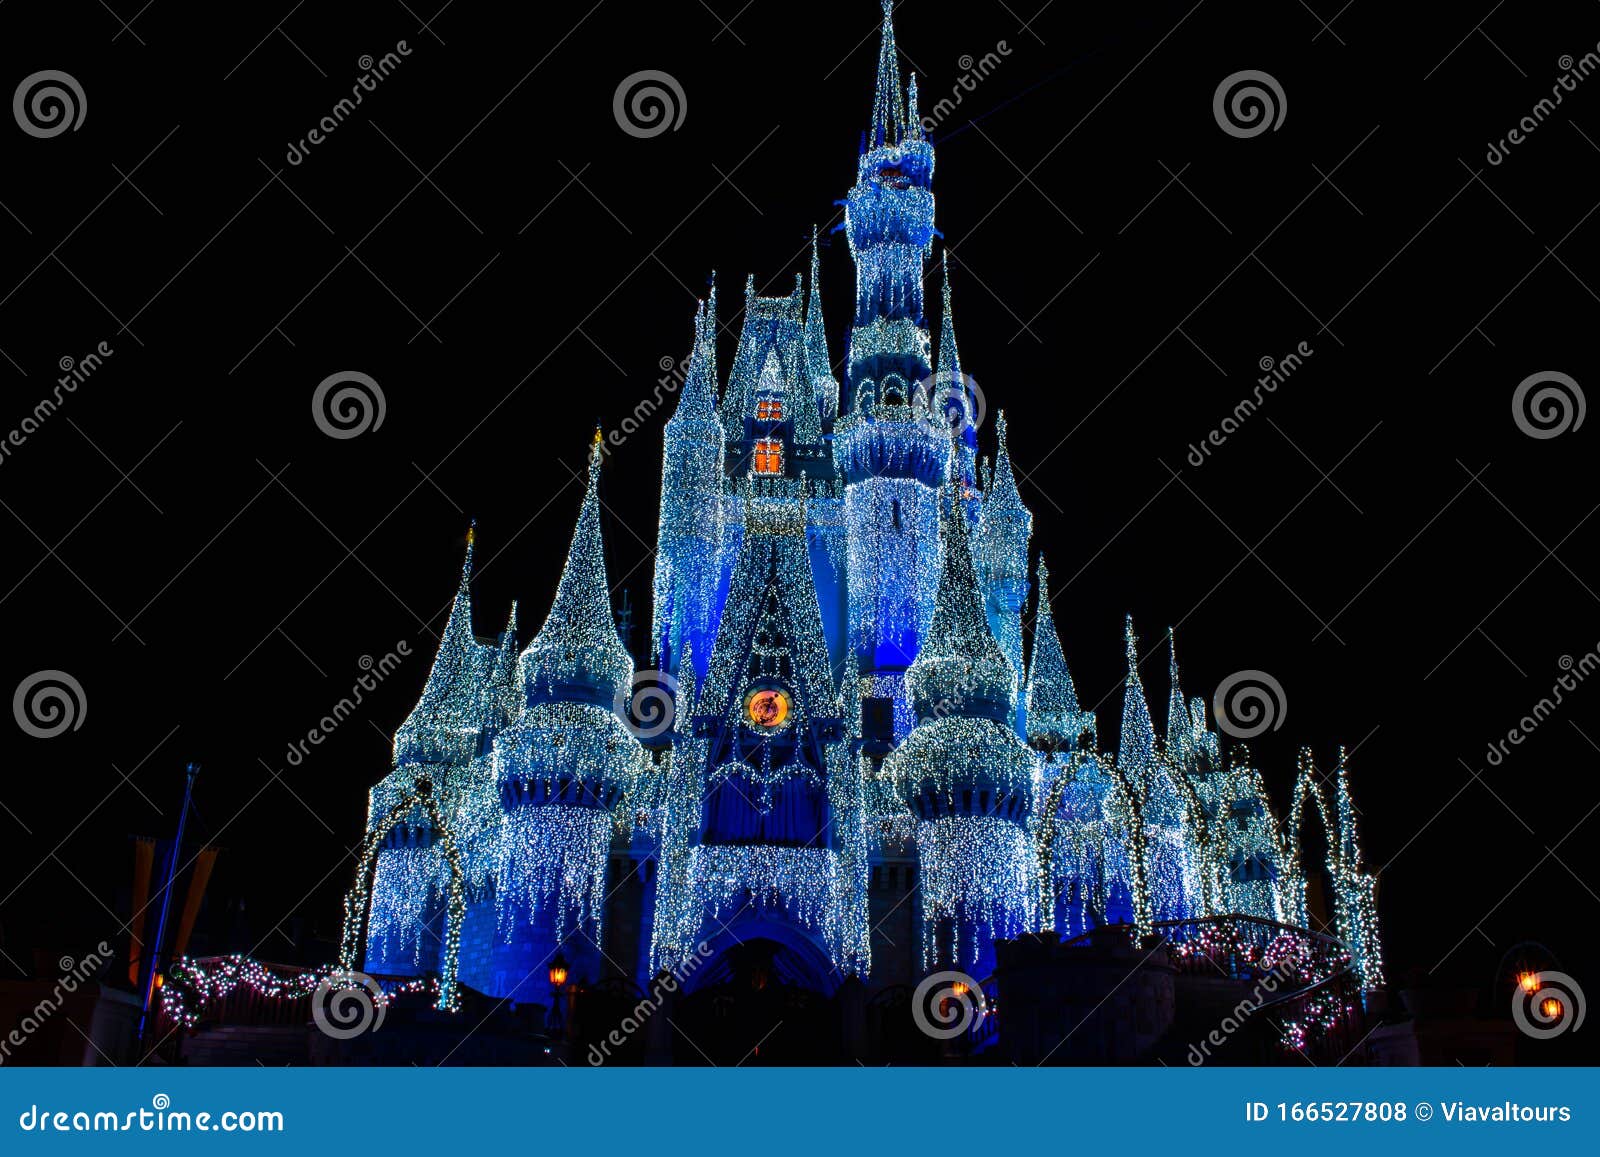 Frozen Castle Stock Photos - 14,631 Images